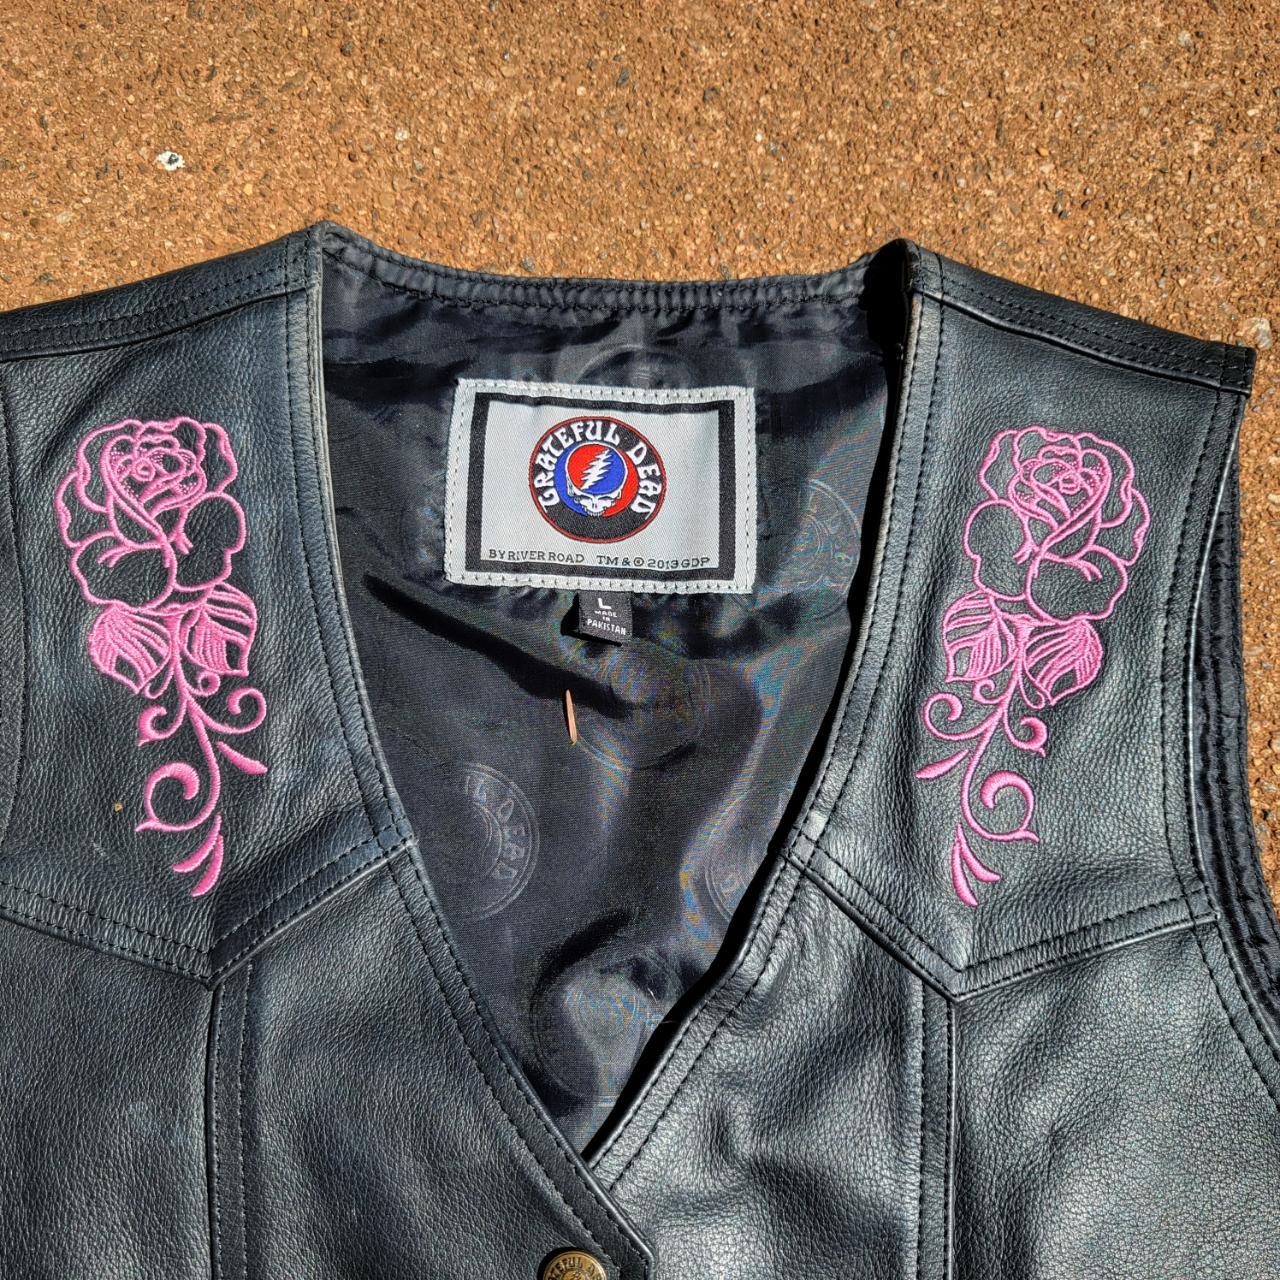 Grateful Dead black leather biker vest with... - Depop